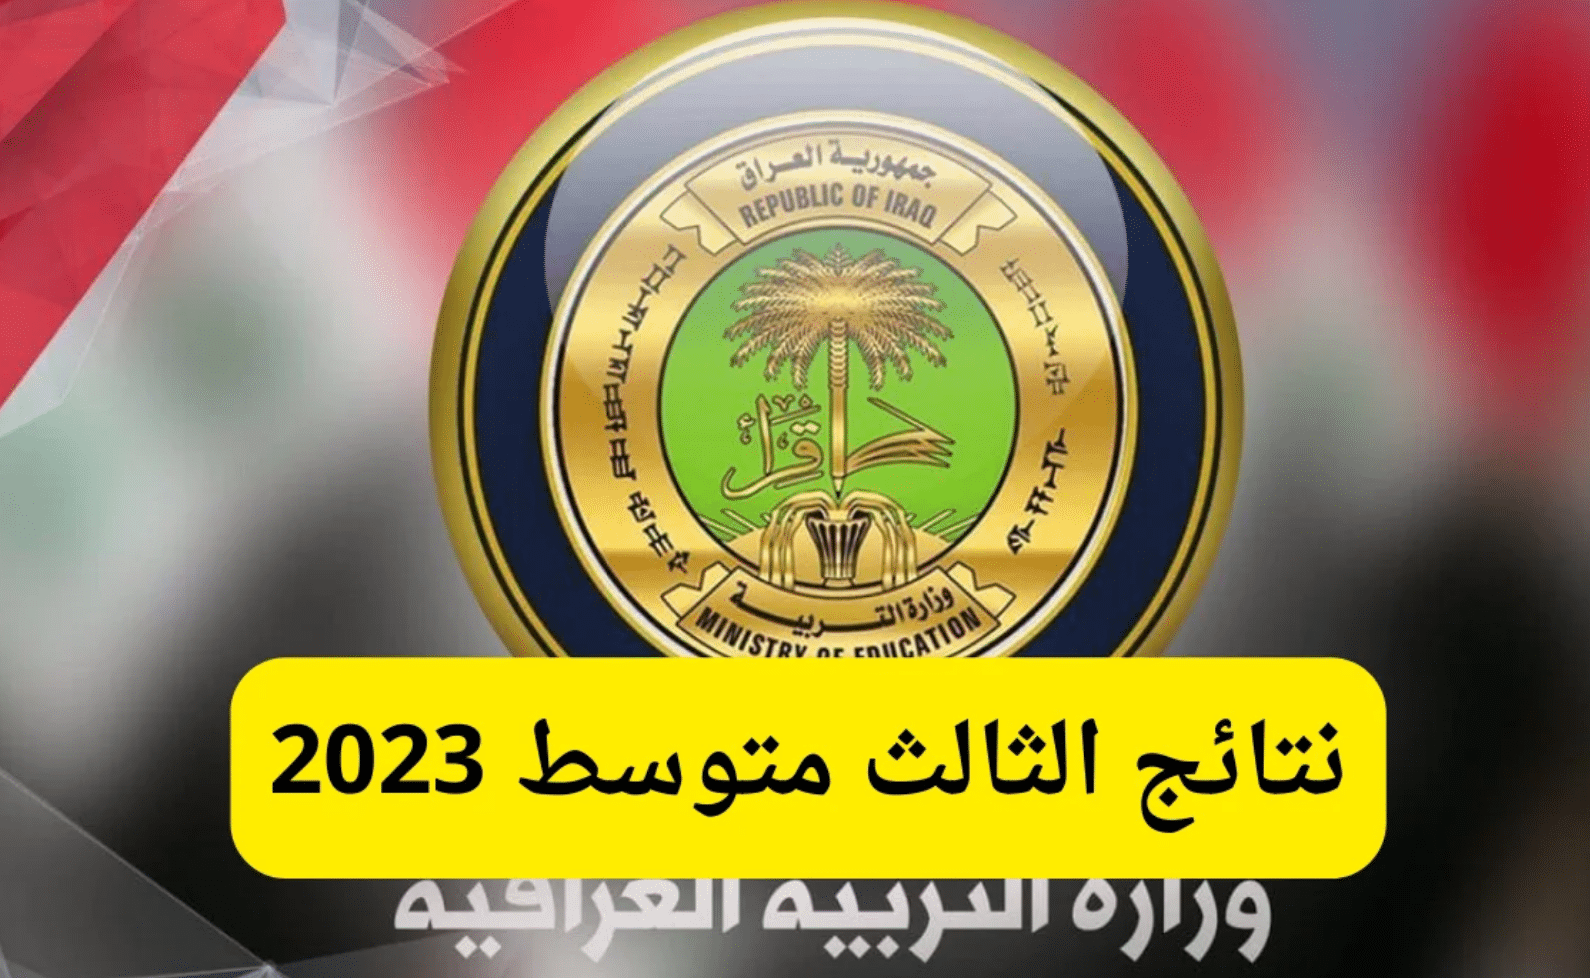 رابط استخراج نتائج الثالث المتوسط 2023 في العراق وزارة التربية العراقية